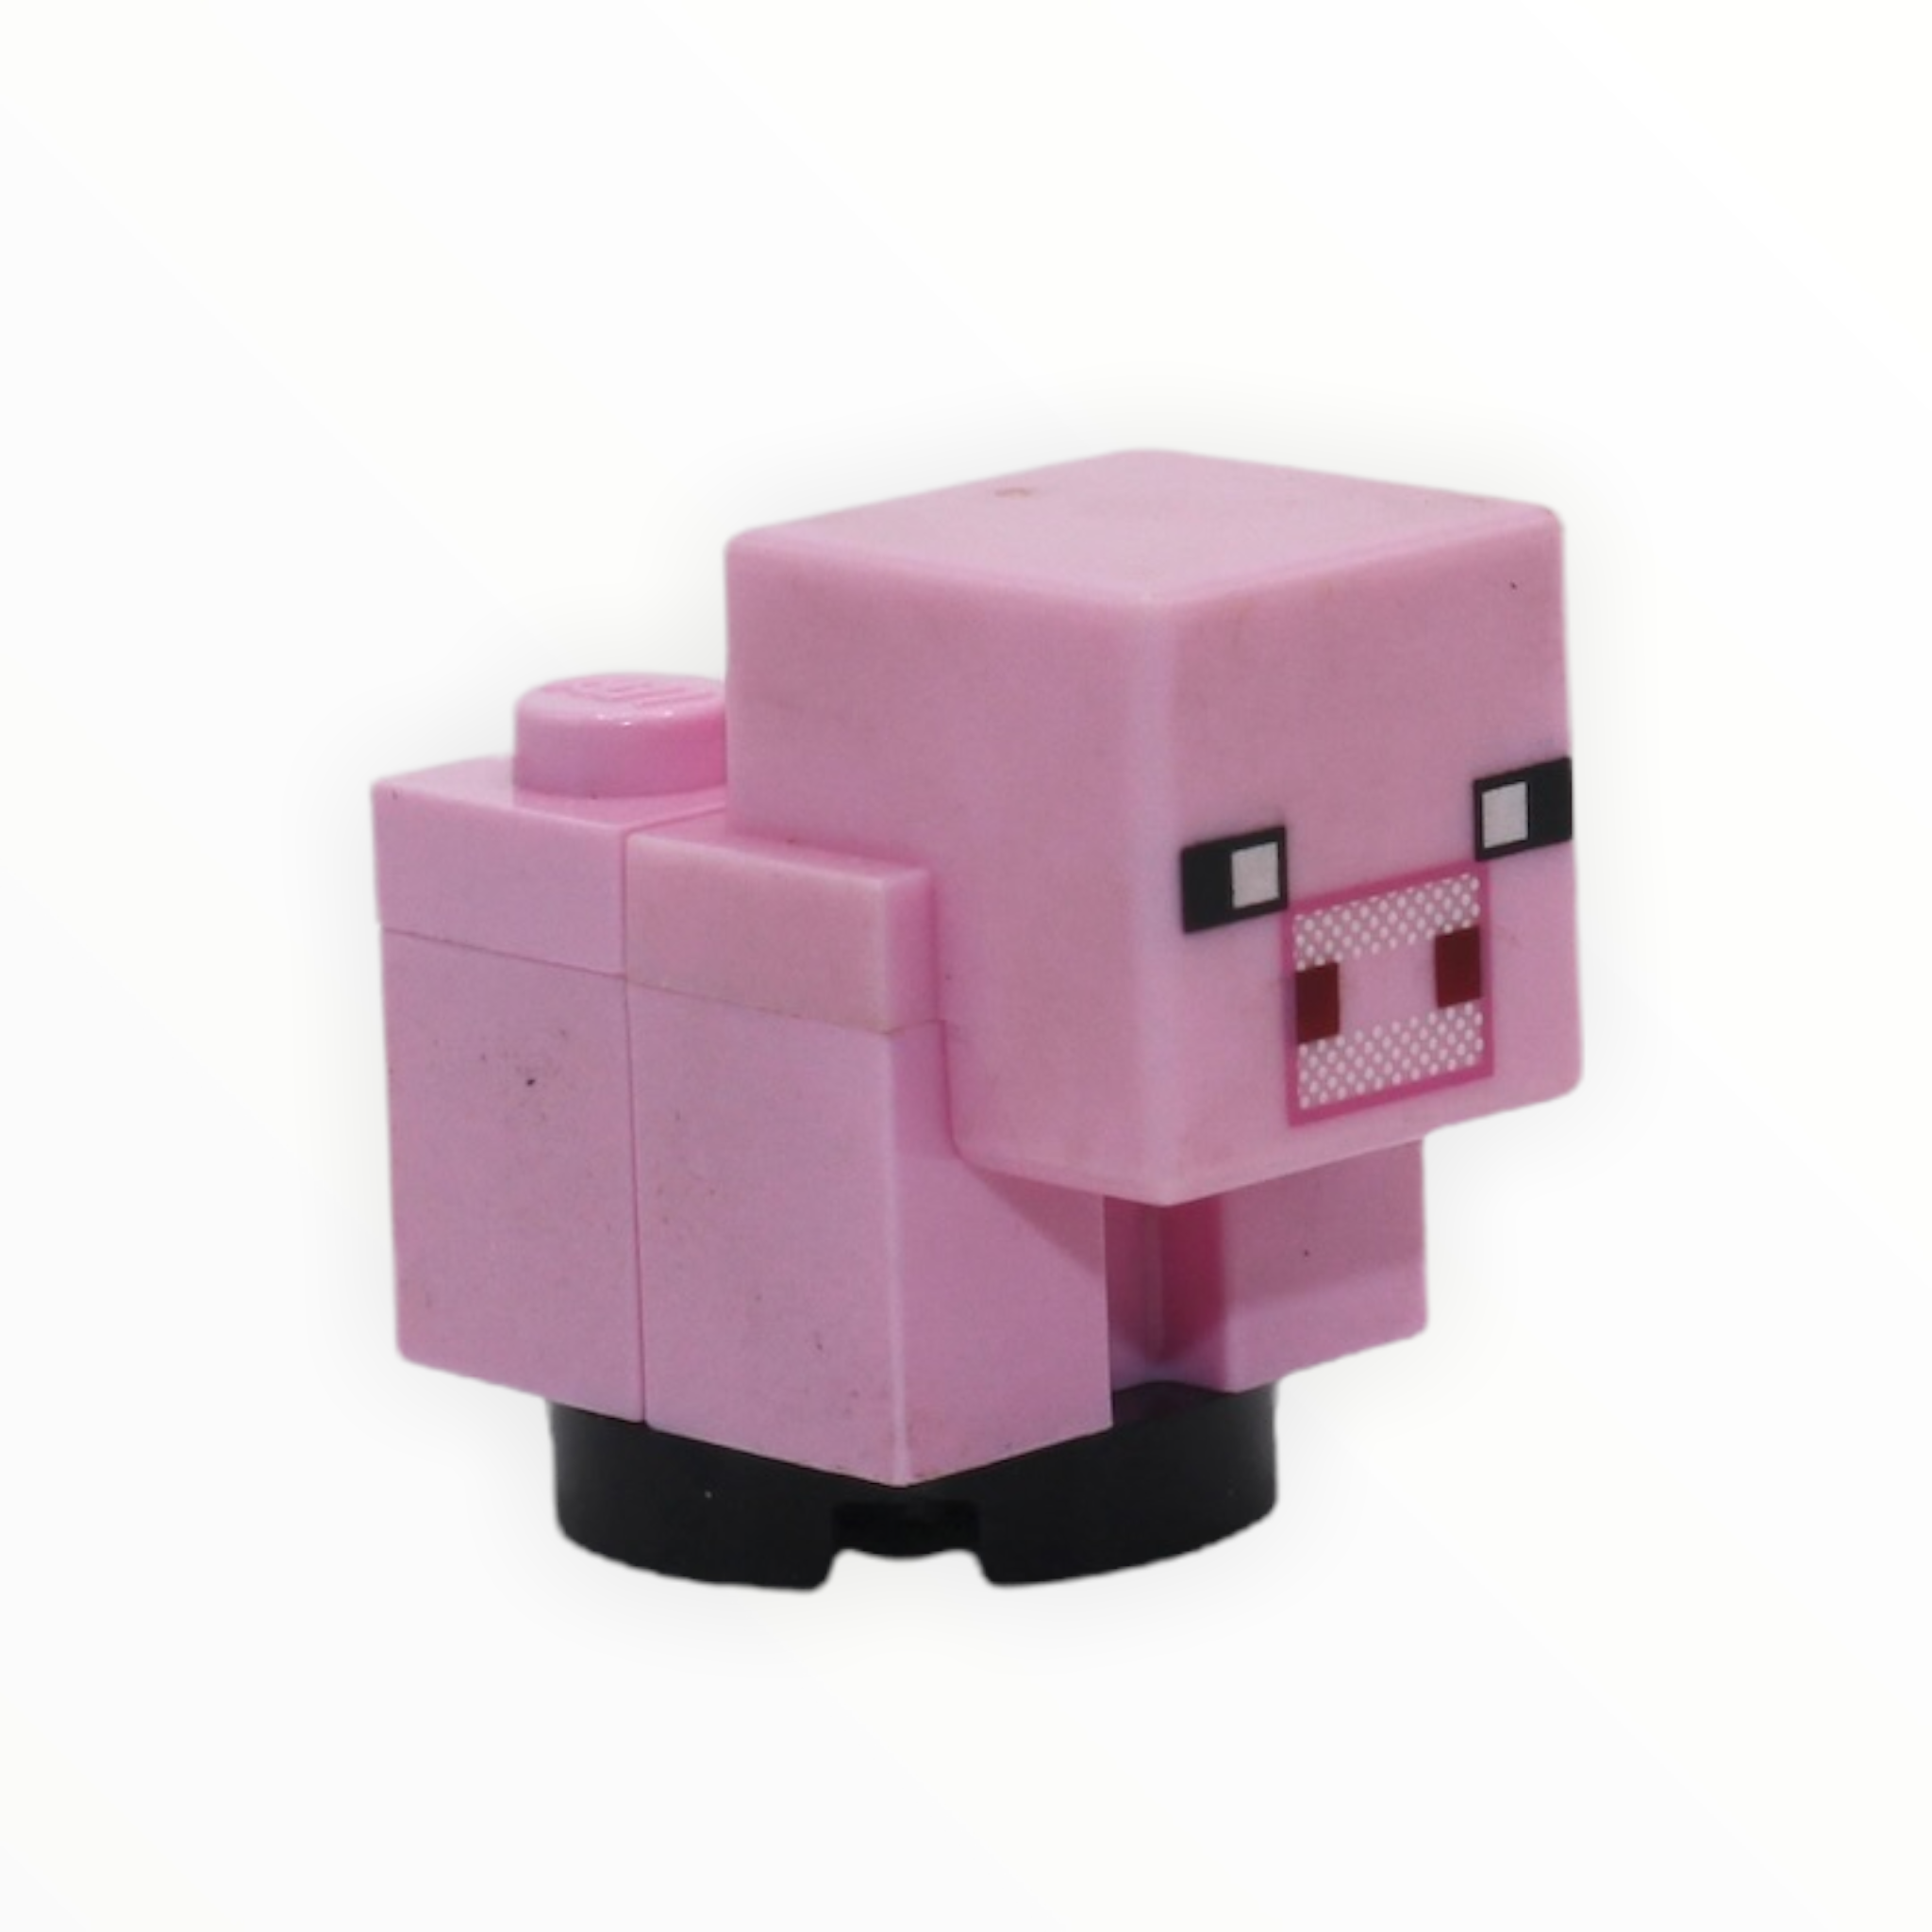 Minecraft Piglet